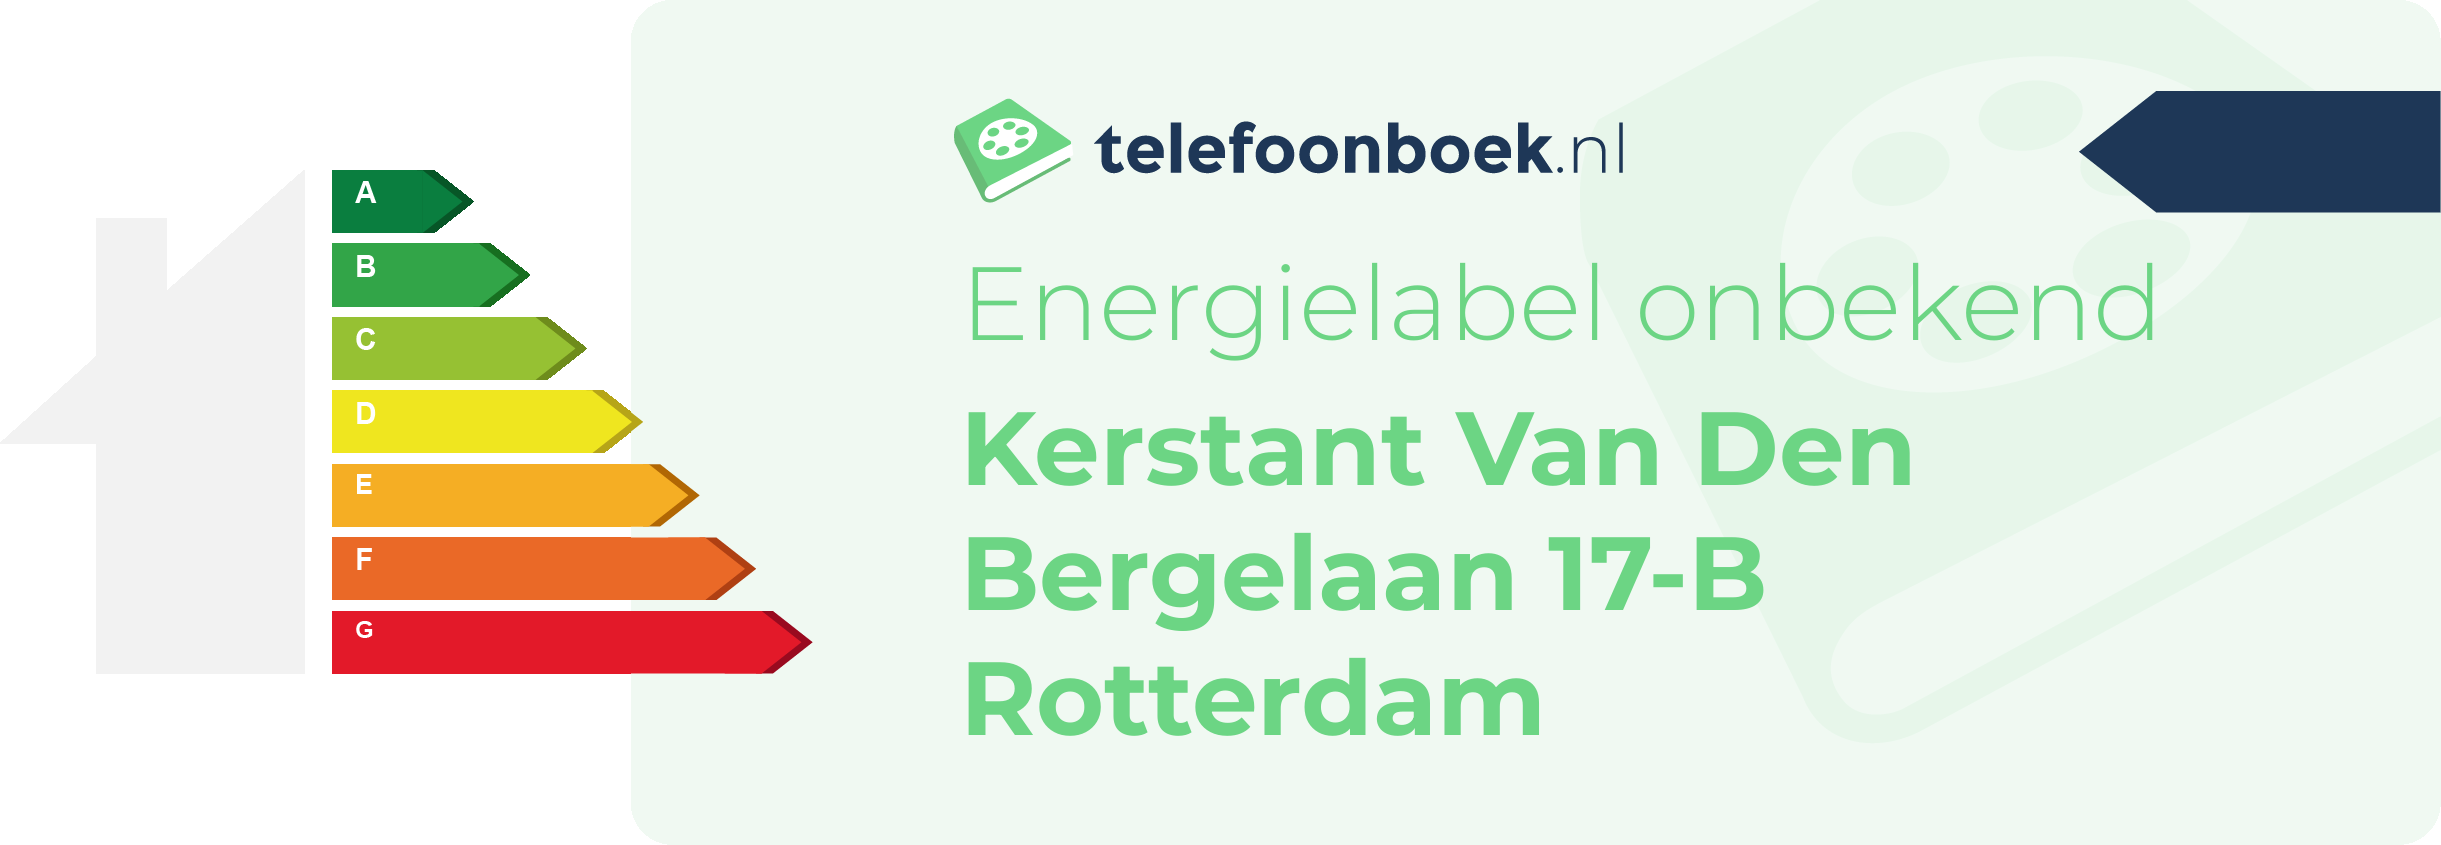 Energielabel Kerstant Van Den Bergelaan 17-B Rotterdam